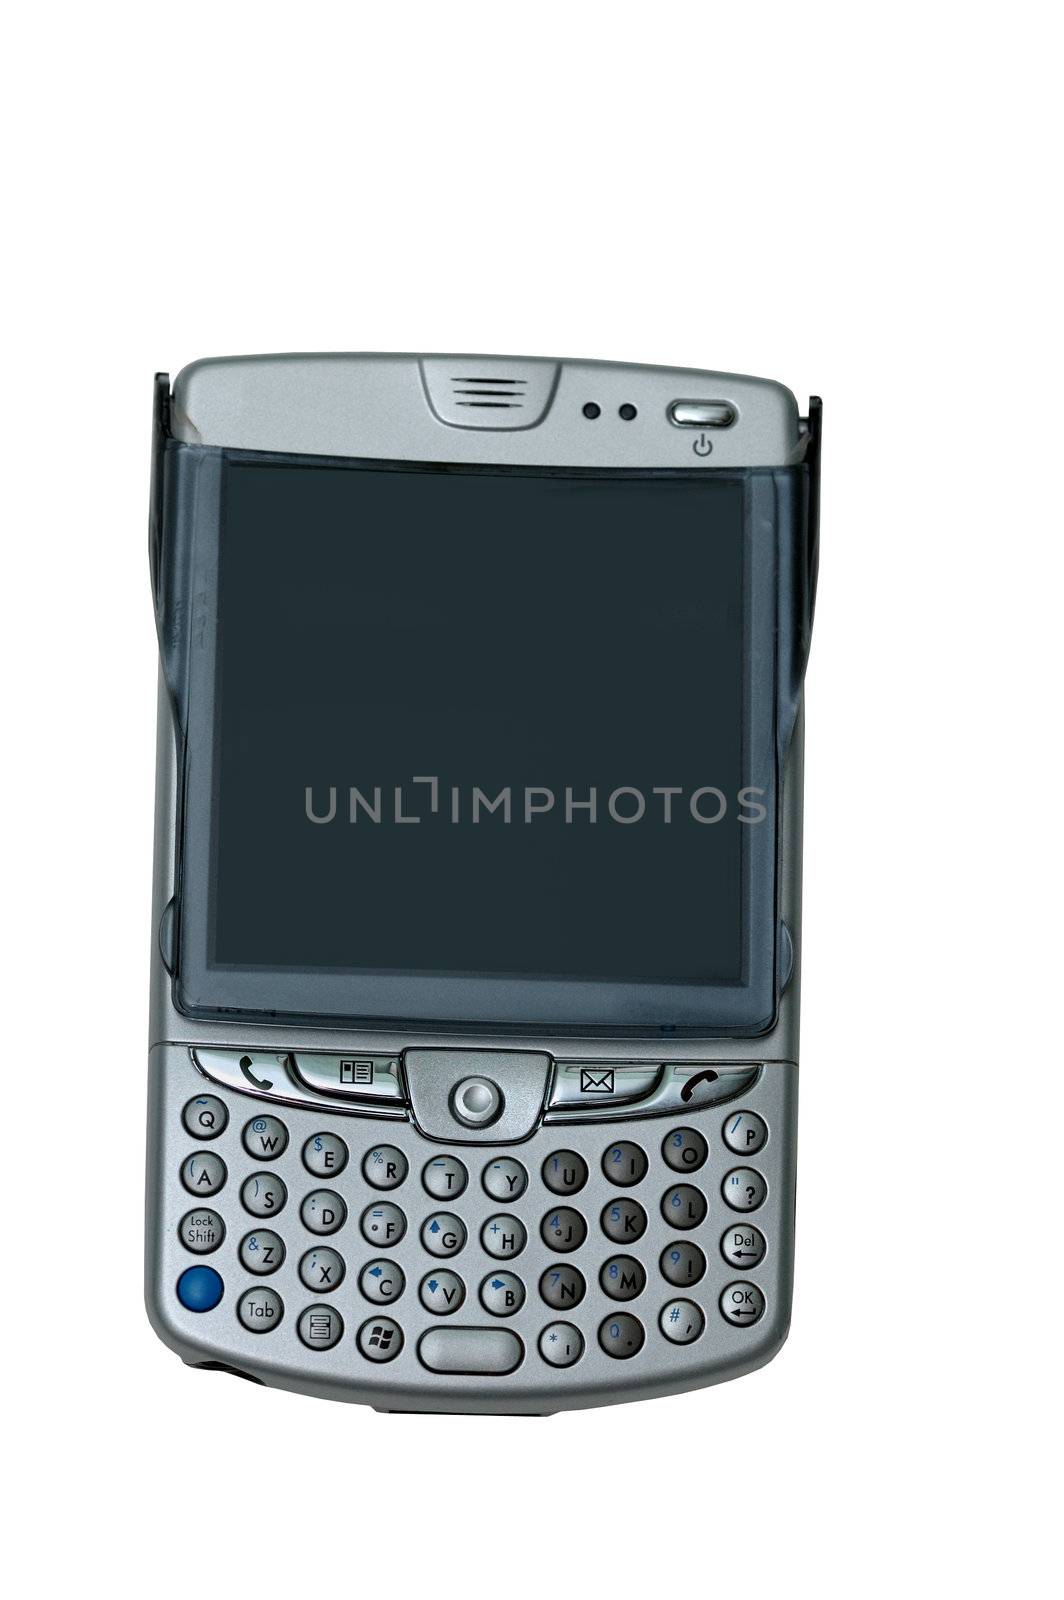 multi tasking PDA phone isolated on white